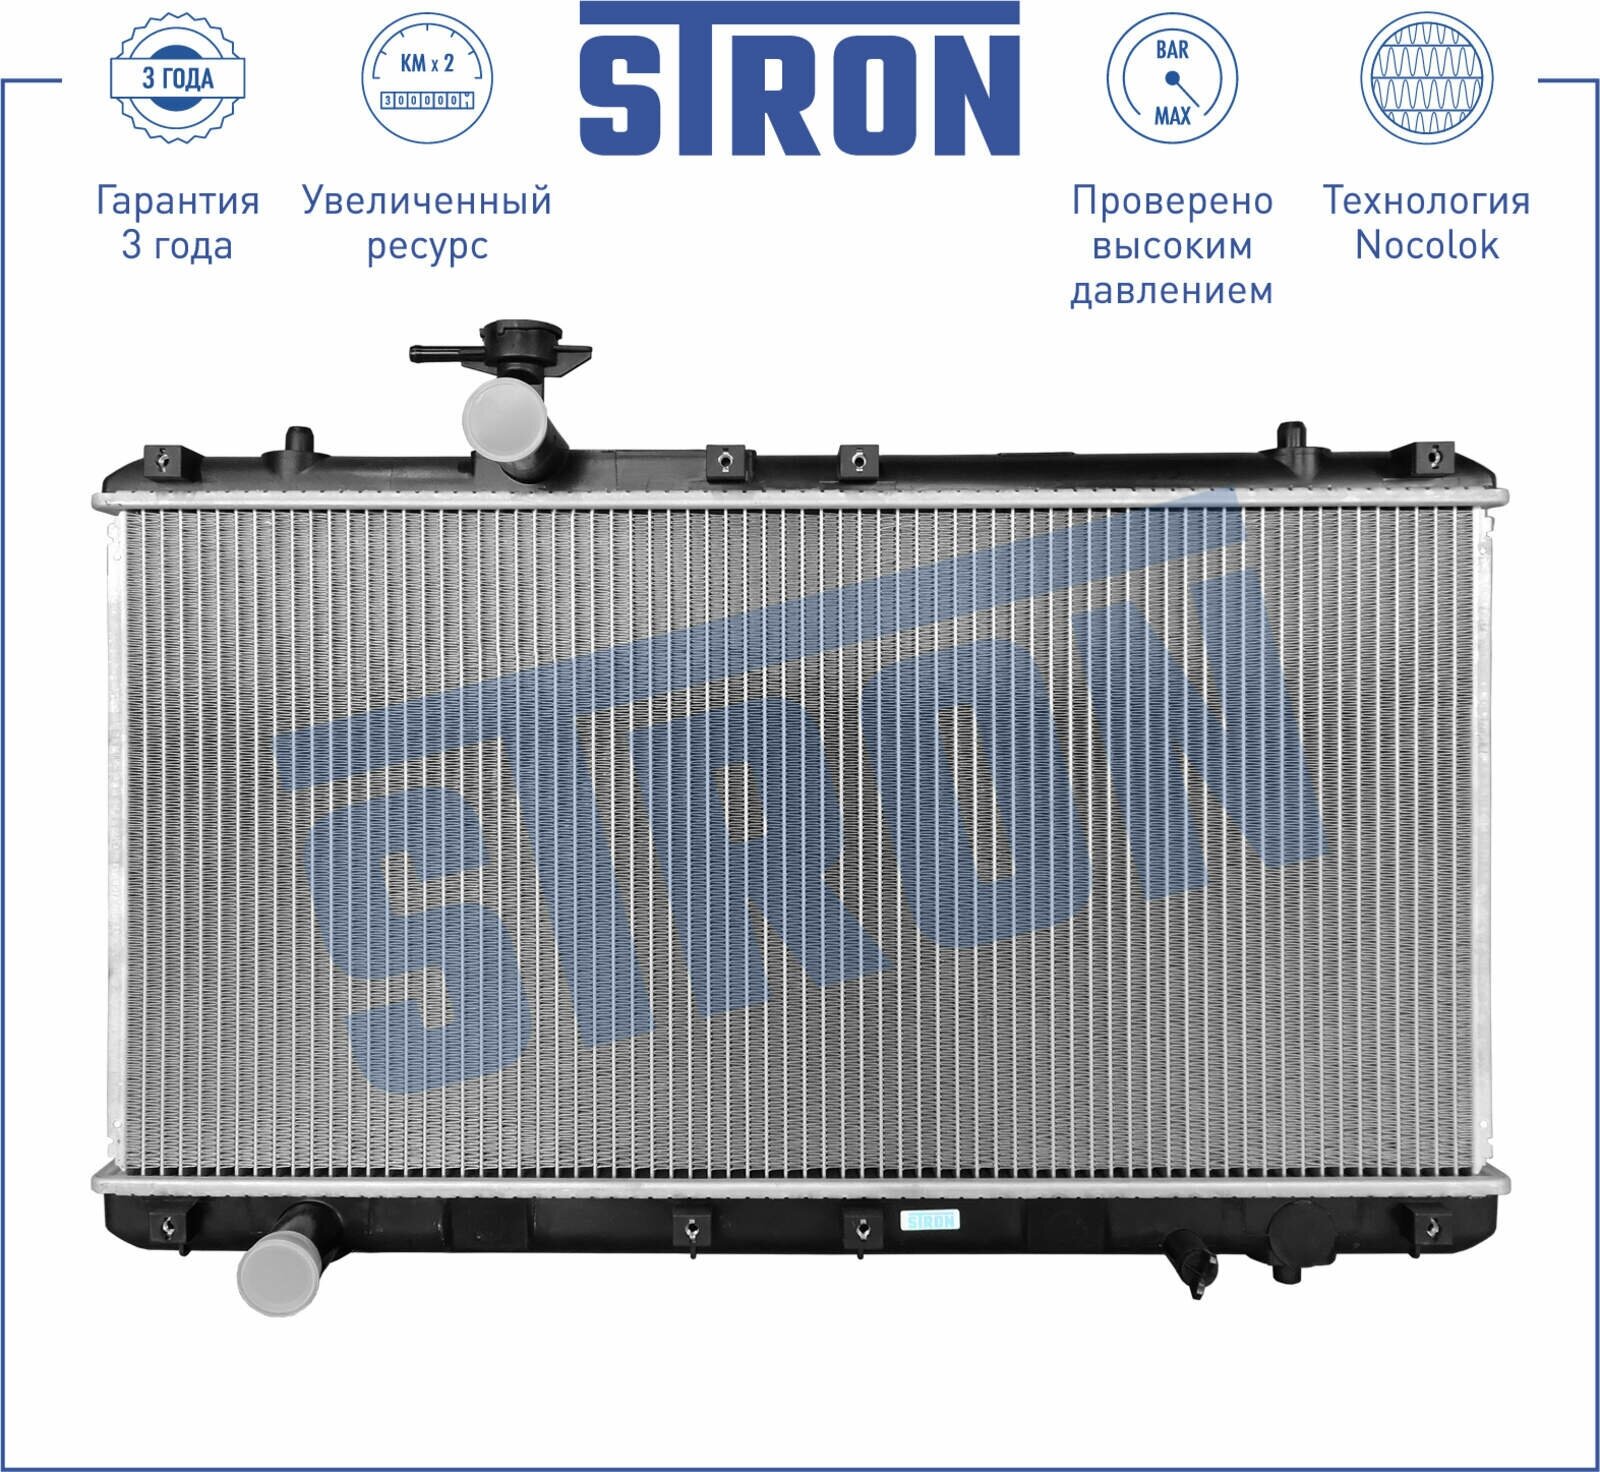 Радиатор двигателя Suzuki AERIO (ER) (01-) 1,3 i 16V двигатель STRON STR0207